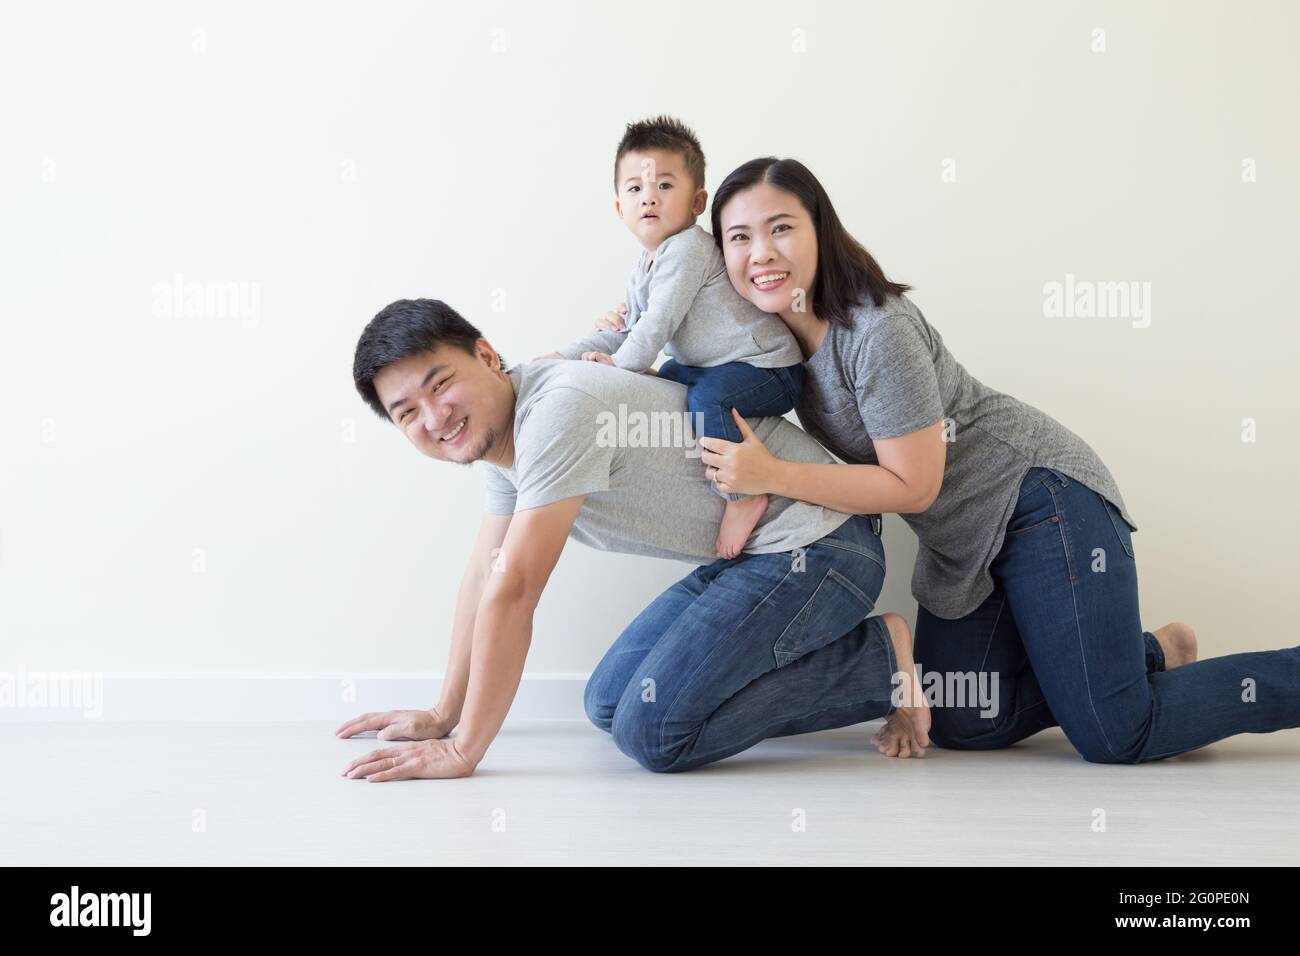 Glückliche Familie mit thailändischer und chinesischer Abstammung und einem kleinen Jungen, der sich auf dem Boden amüsieren kann Stockfoto